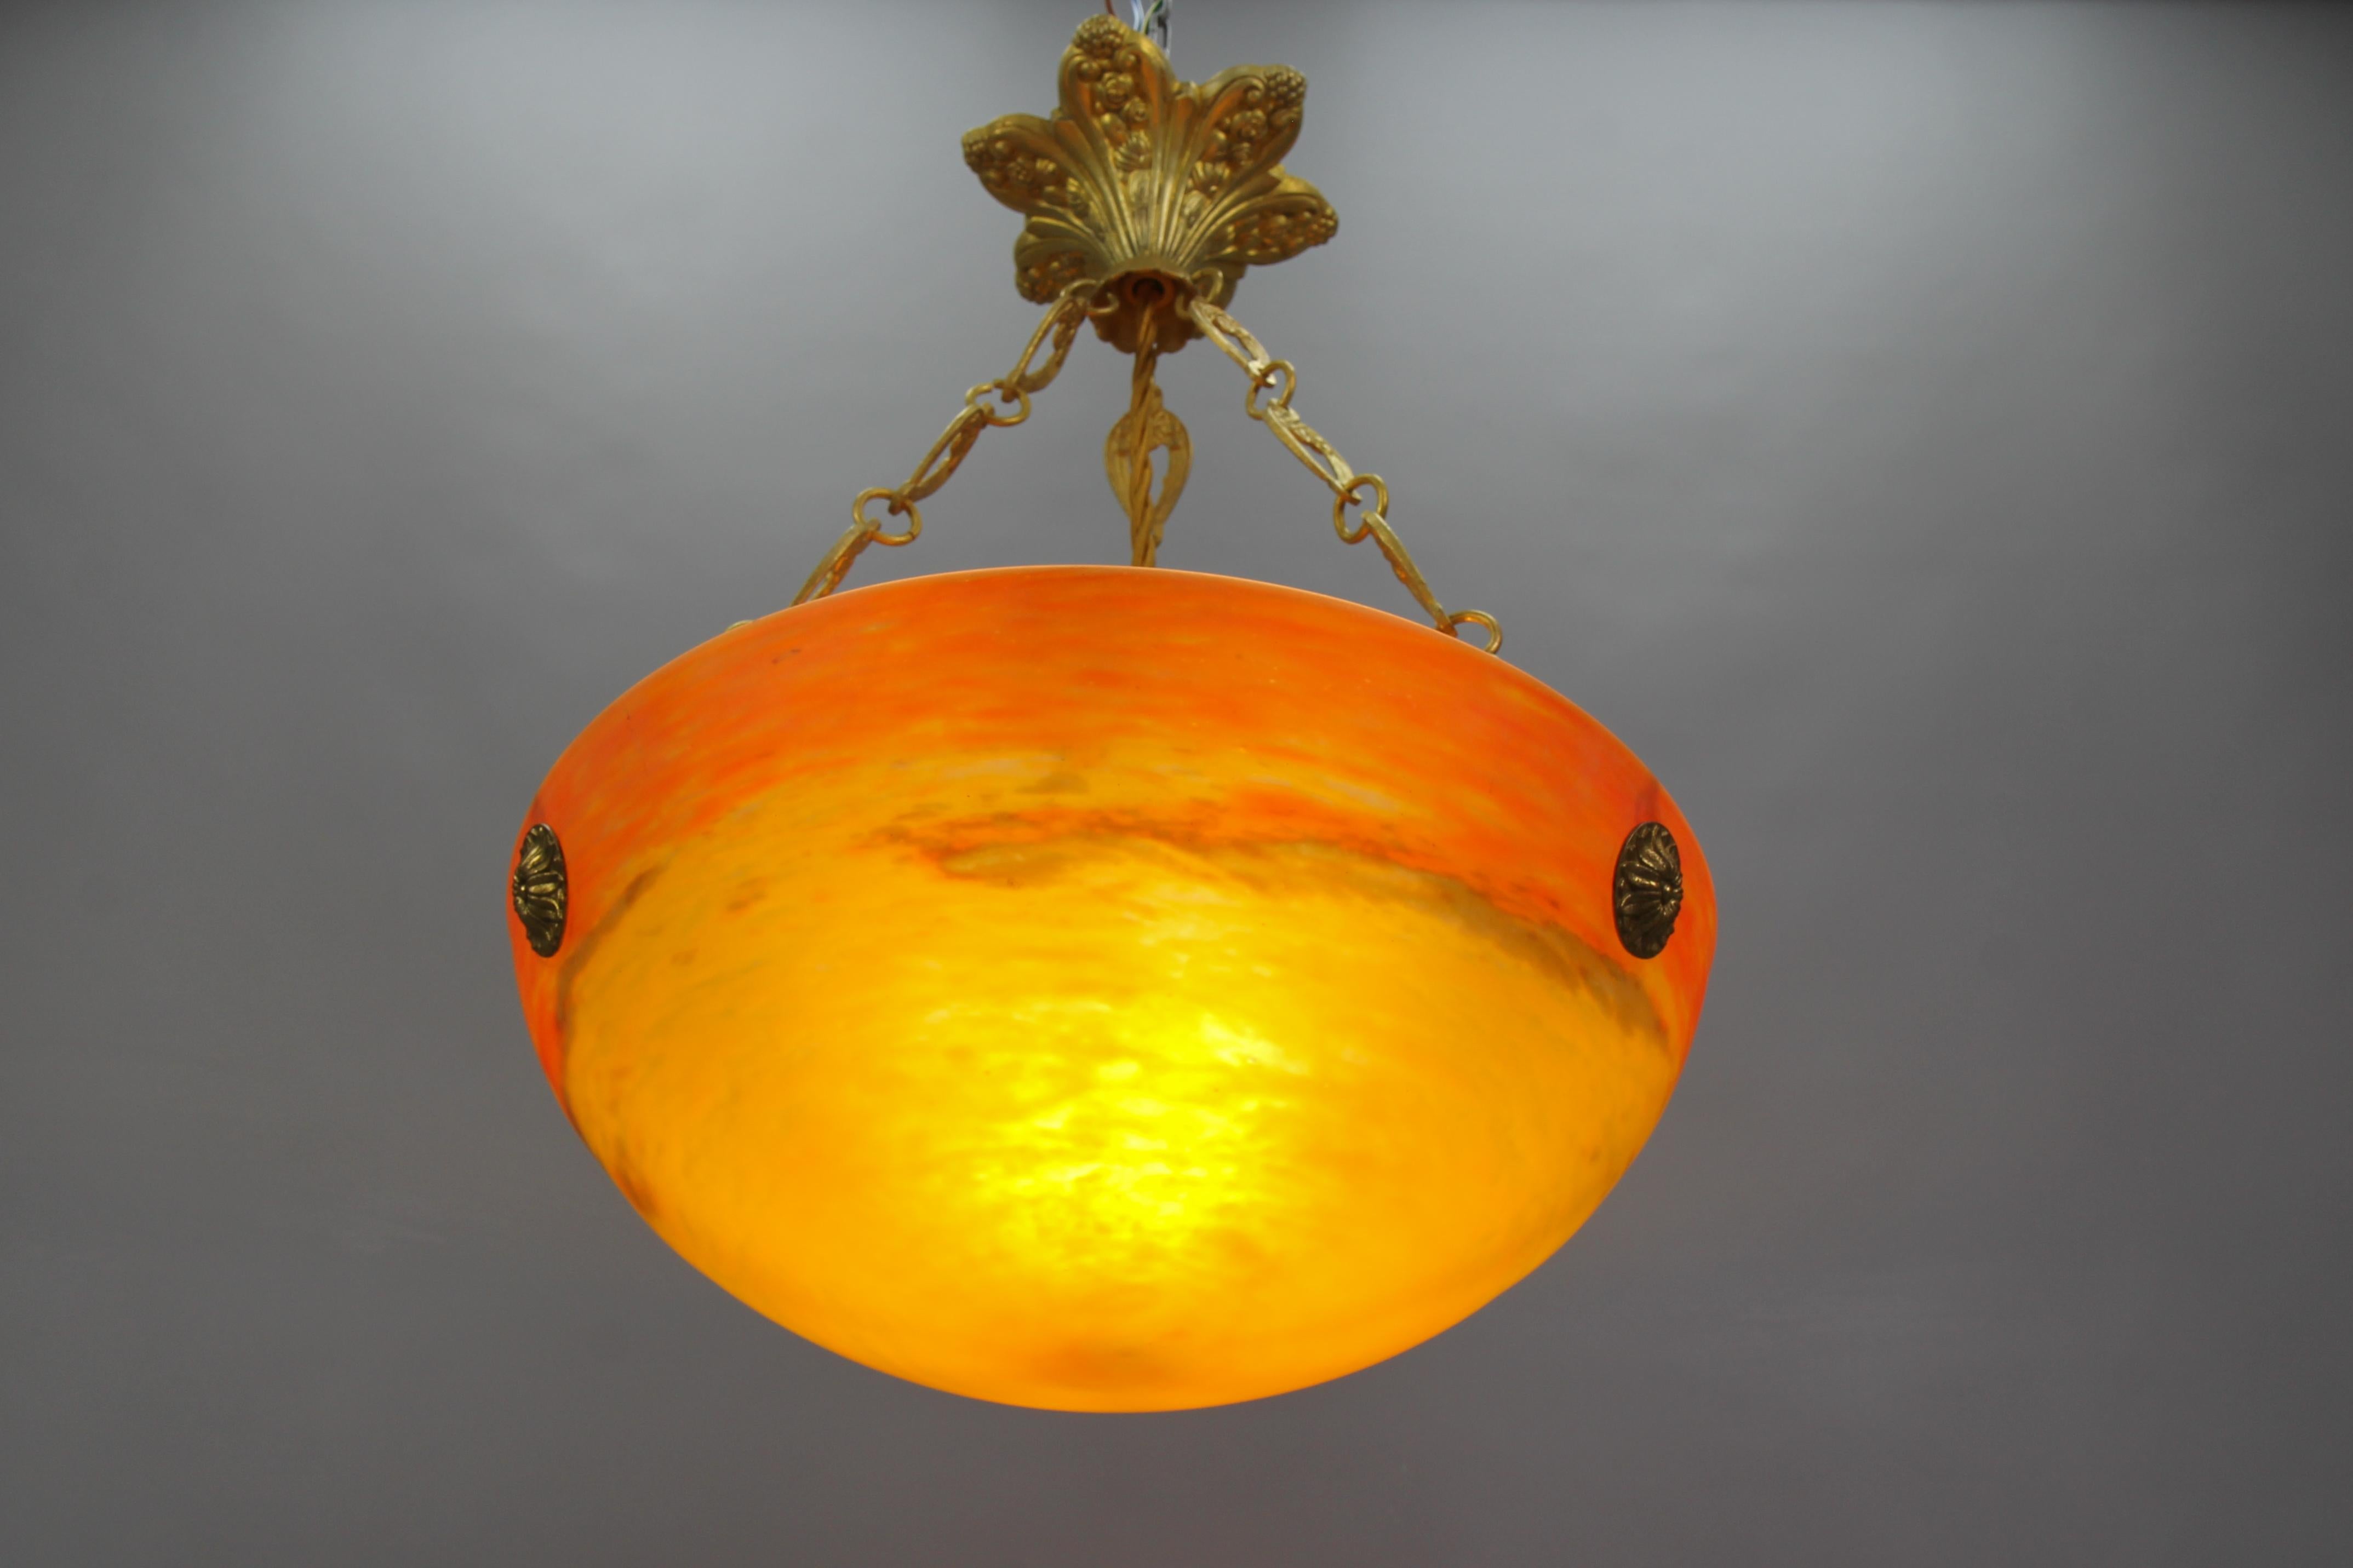 Französische Art Deco Pendelleuchte aus orangefarbenem Pâte de Verre Glas von G.V. de Croismare, Muller Frères Luneville.
Diese reizvolle französische Art-Déco-Hängeleuchte besteht aus einer orangefarbenen 